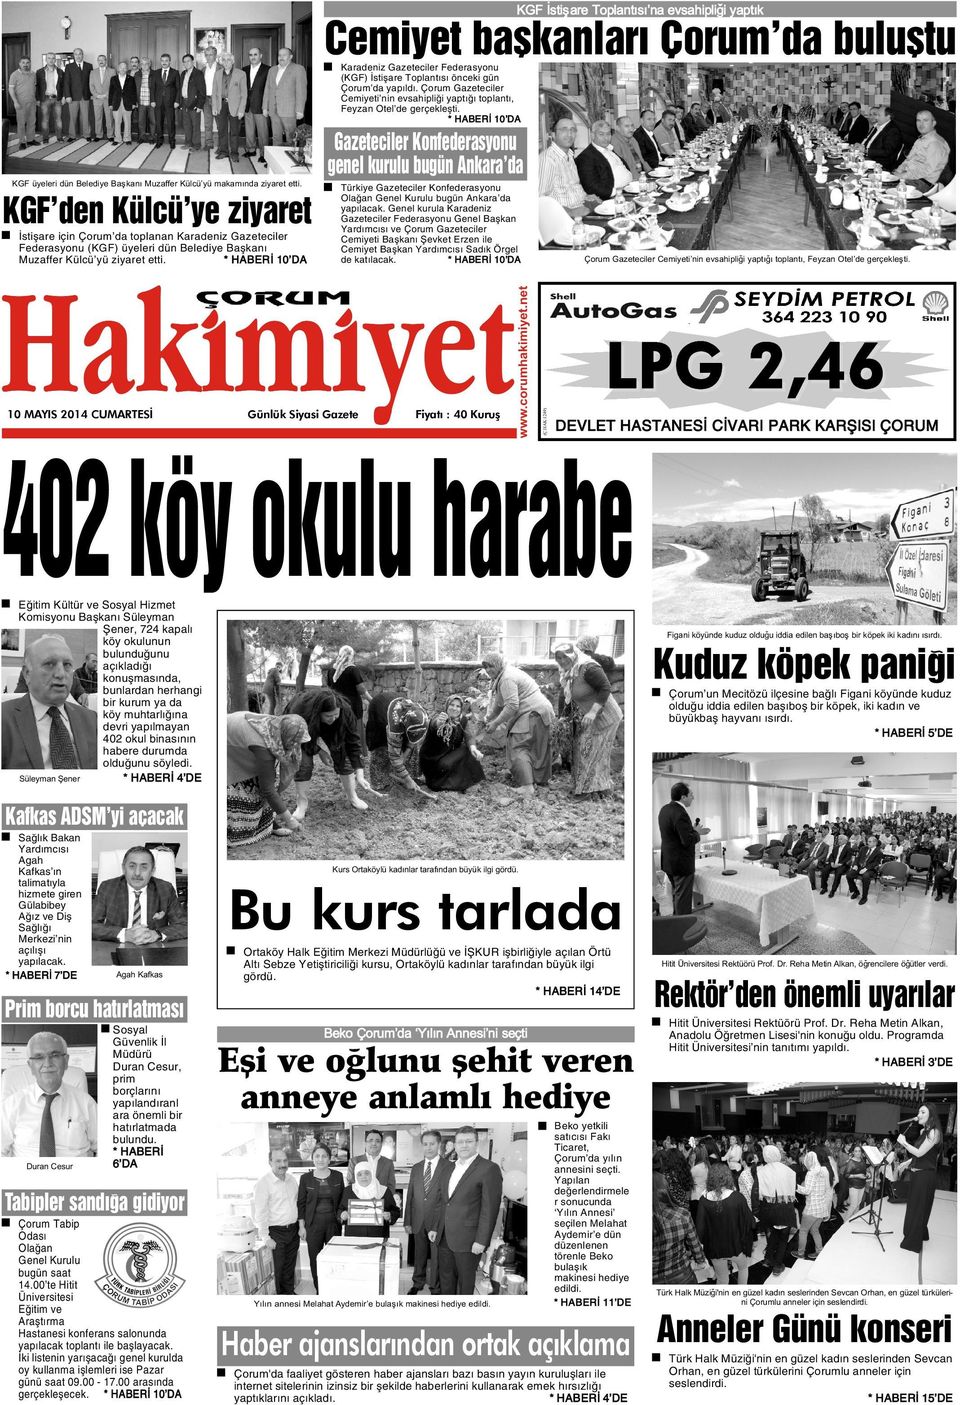 * HABERÝ 10 DA Gazeteciler Konfederasyonu genel kurulu bugün Ankara da KGF den Külcü ye ziyaret Ýstiþare için Çorum da toplanan Karadeniz Gazeteciler Federasyonu (KGF) üyeleri dün Belediye Baþkaný